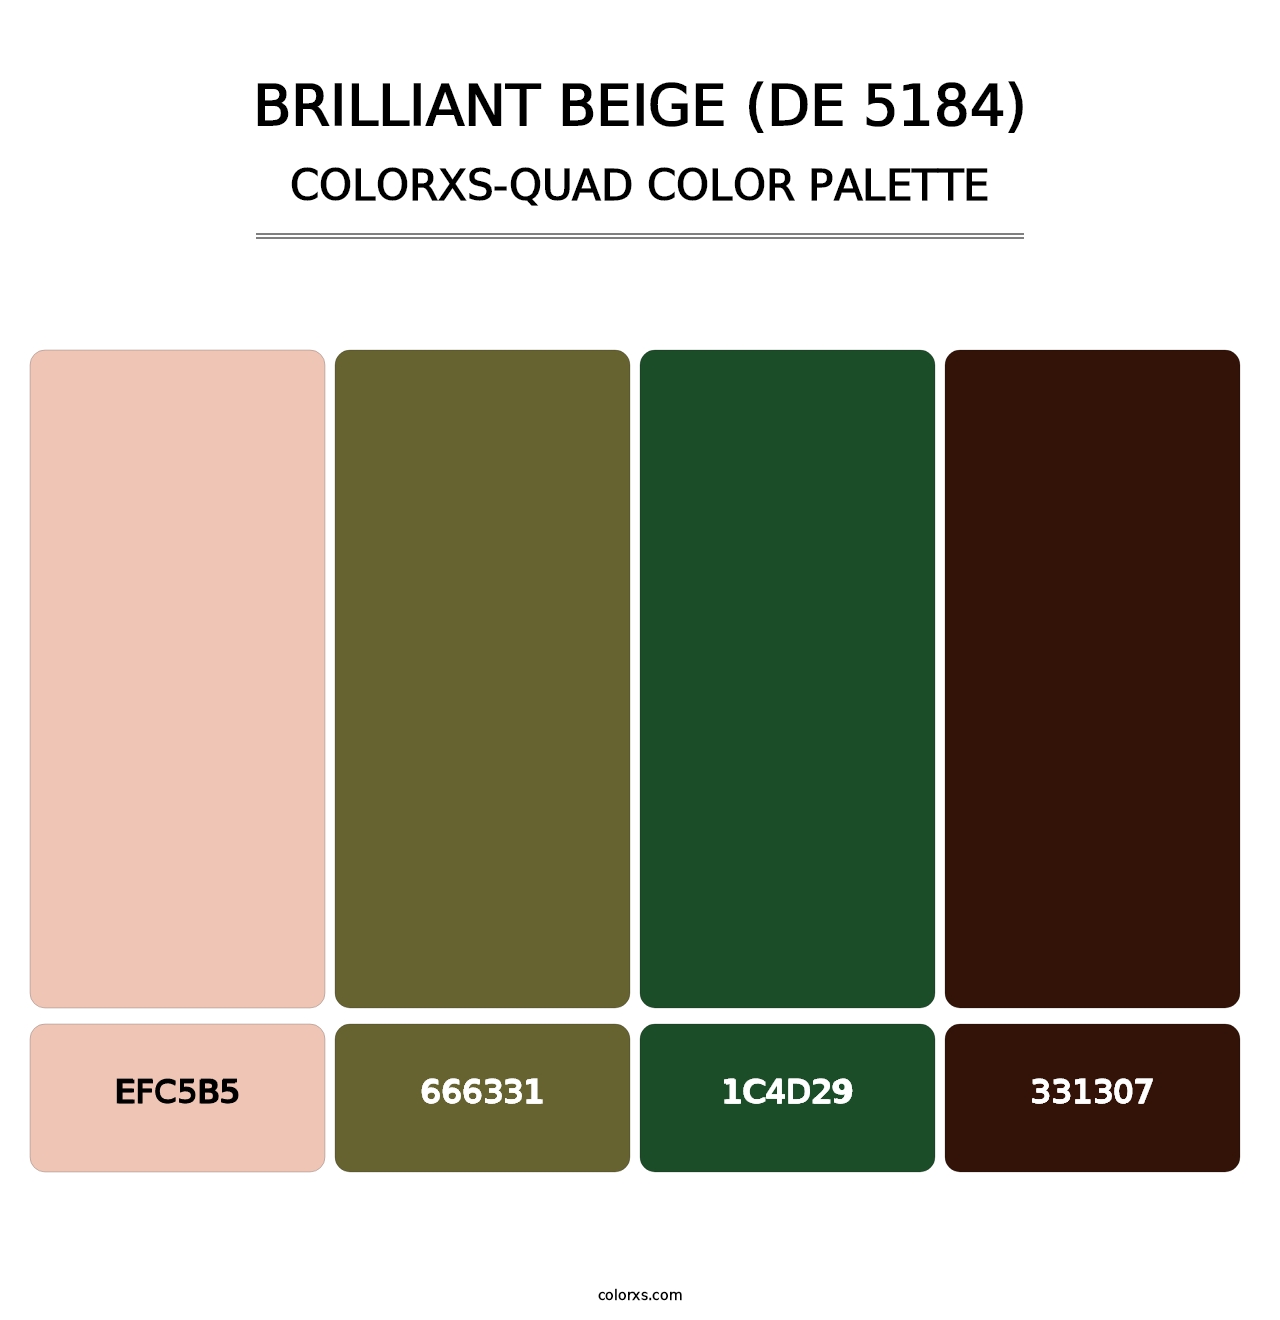 Brilliant Beige (DE 5184) - Colorxs Quad Palette